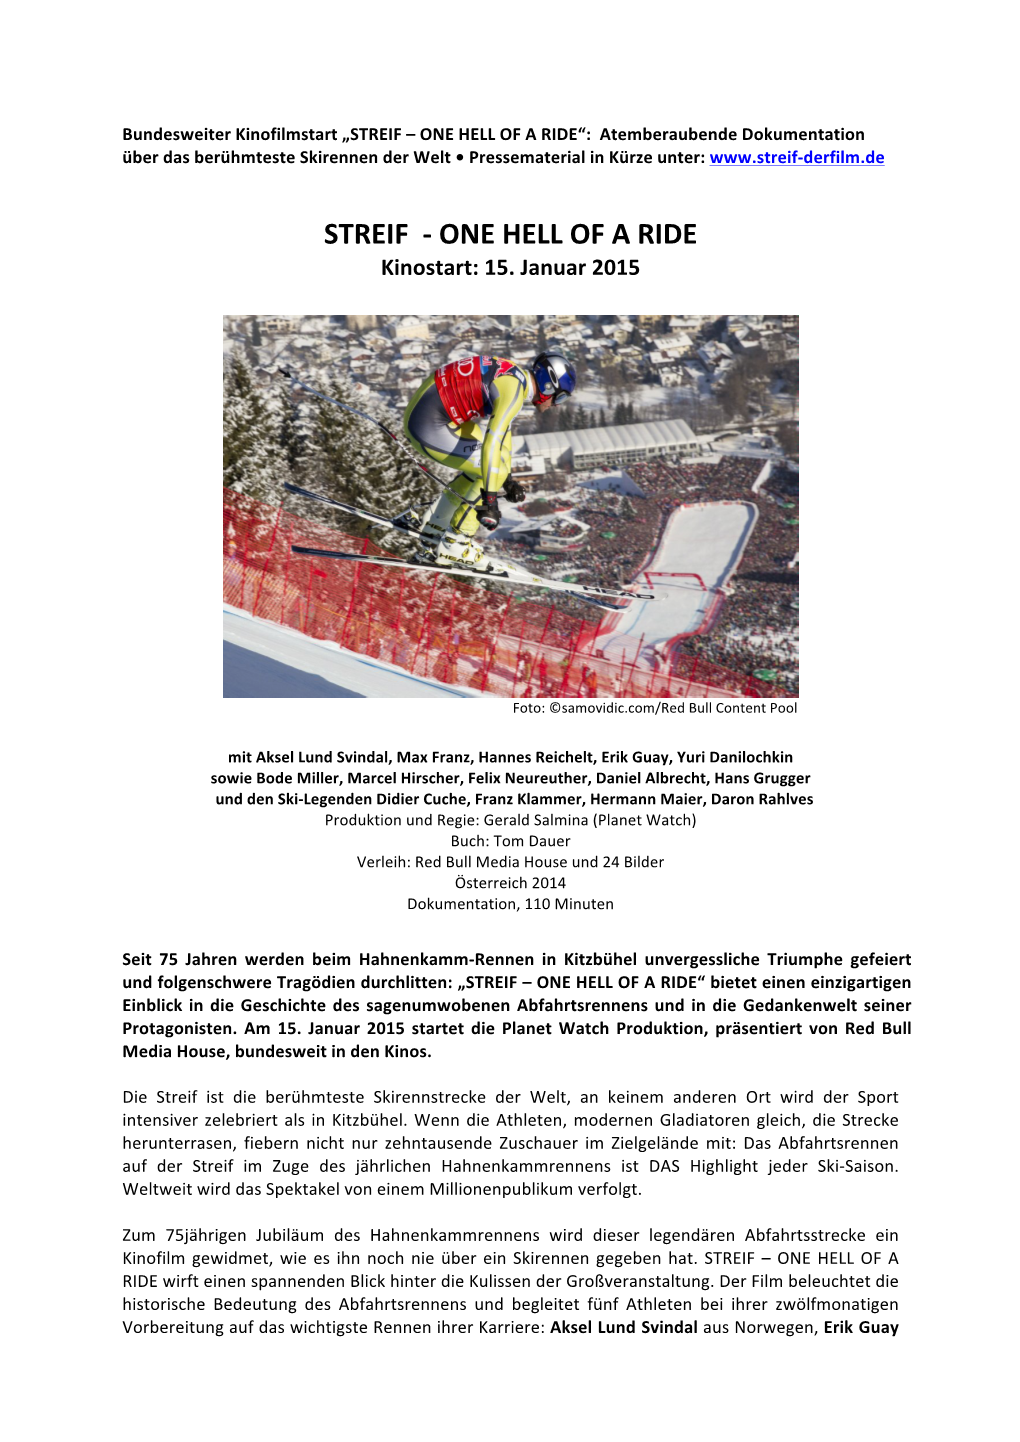 STREIF – ONE HELL of a RIDE“: Atemberaubende Dokumentation Über Das Berühmteste Skirennen Der Welt • Pressematerial in Kürze Unter